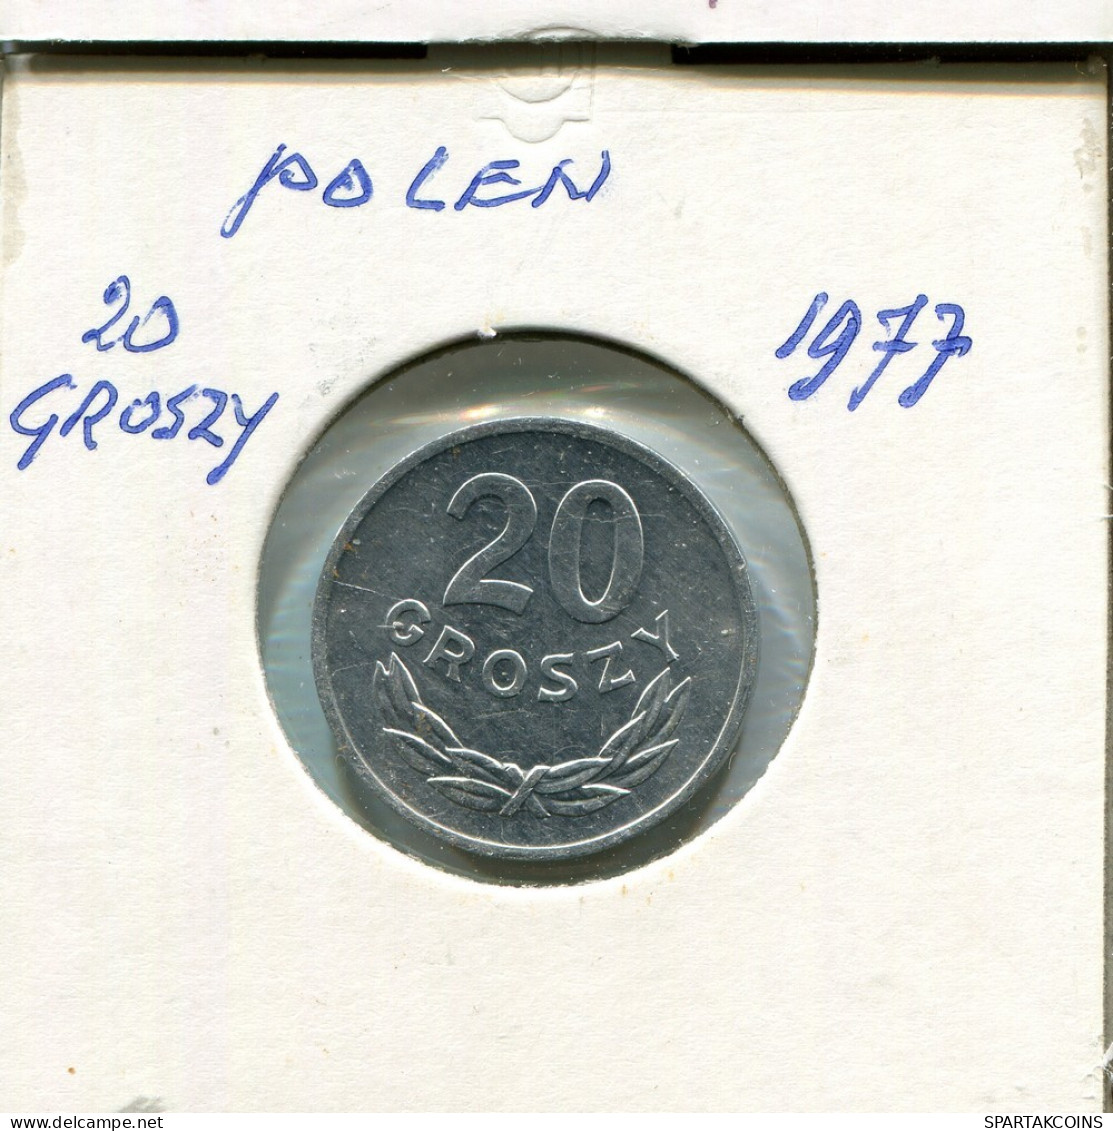 20 GROSZY 1977 POLAND Coin #AR776.U.A - Poland